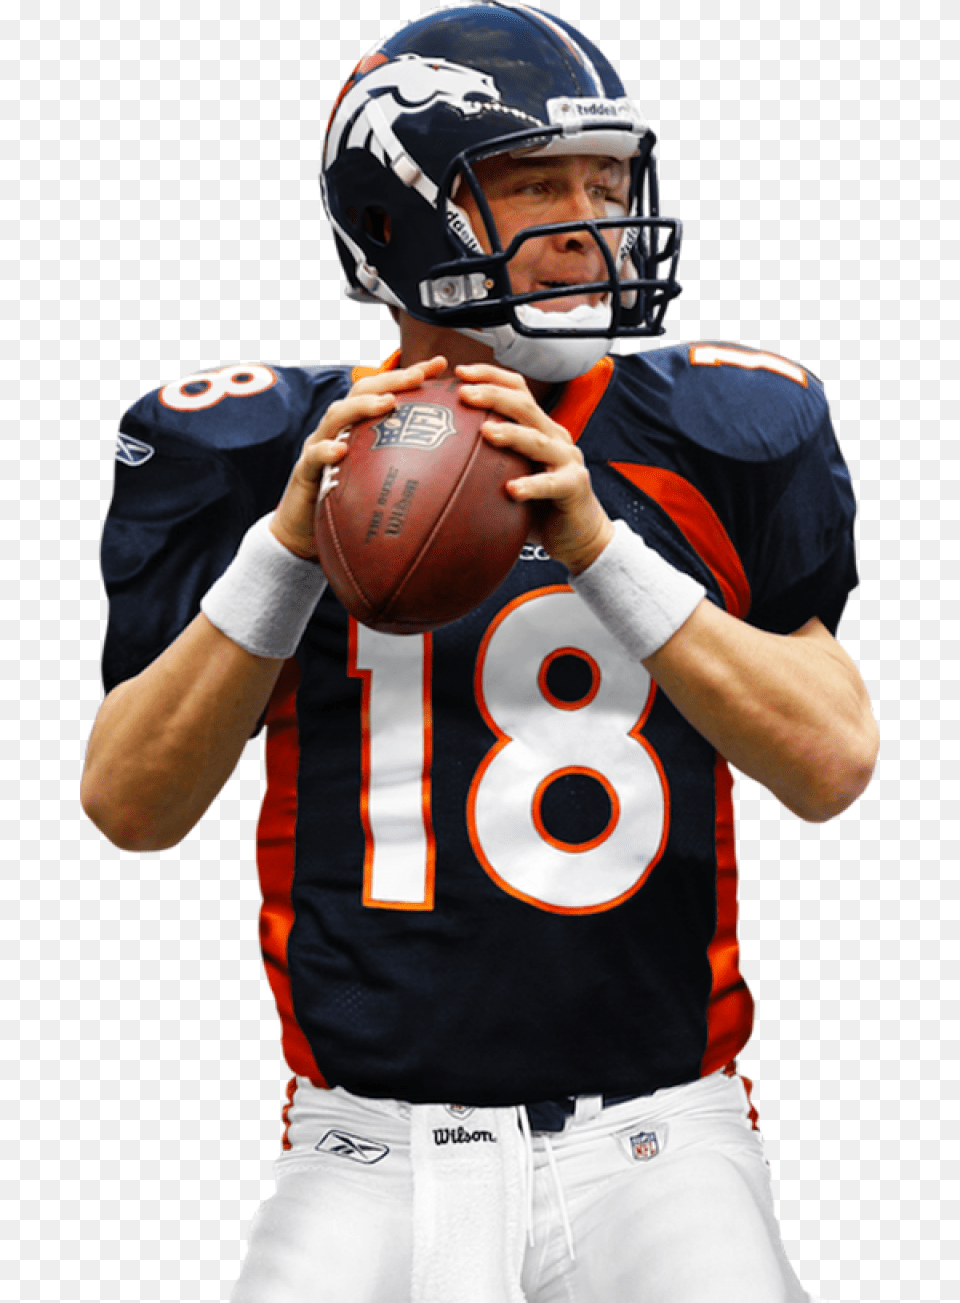 American Football Player Image Peyton Manning Helmet, Playing American Football, Person, People Free Transparent Png